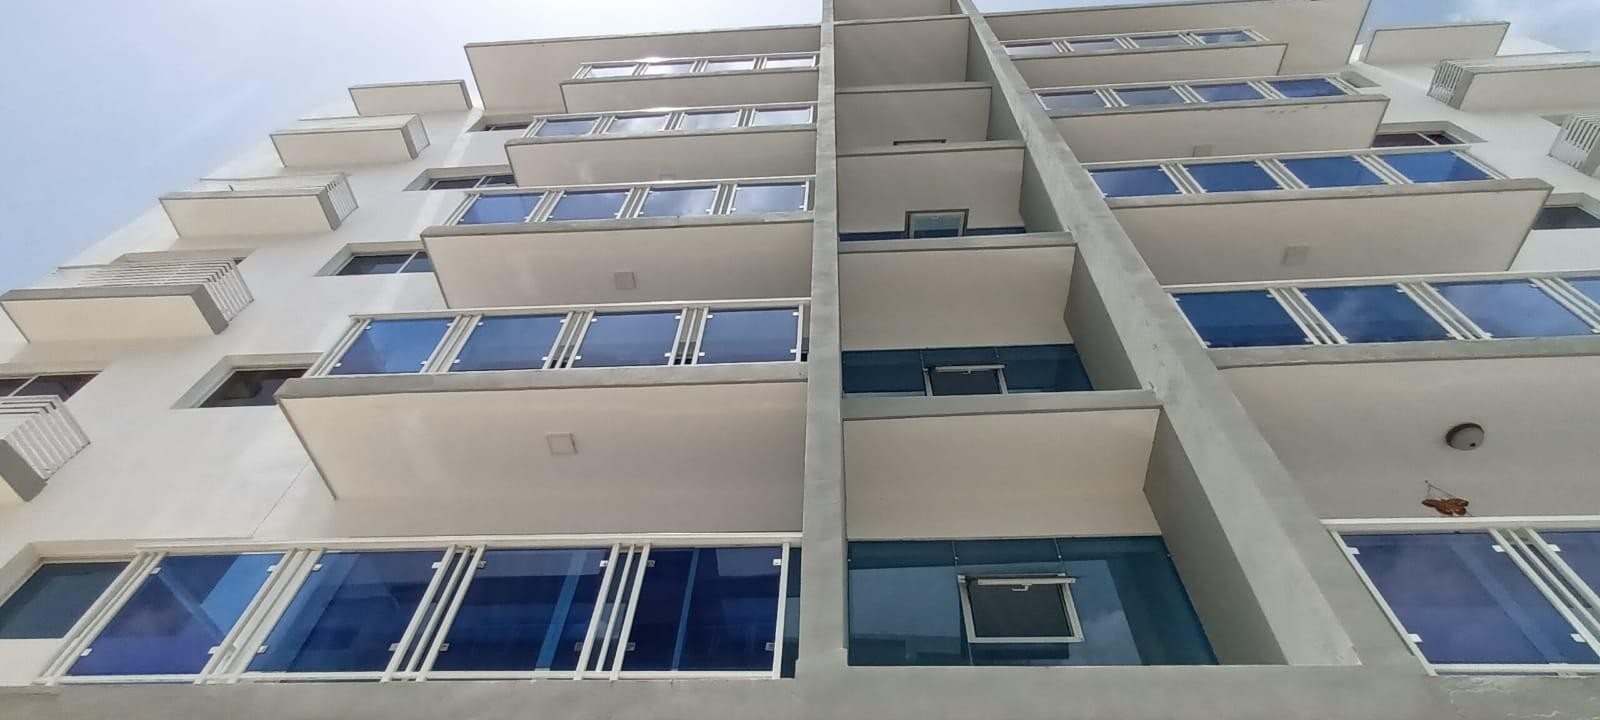 apartamentos - Se alquila céntrico, seguro e iluminado apartamento en la mejor zona de Santiago